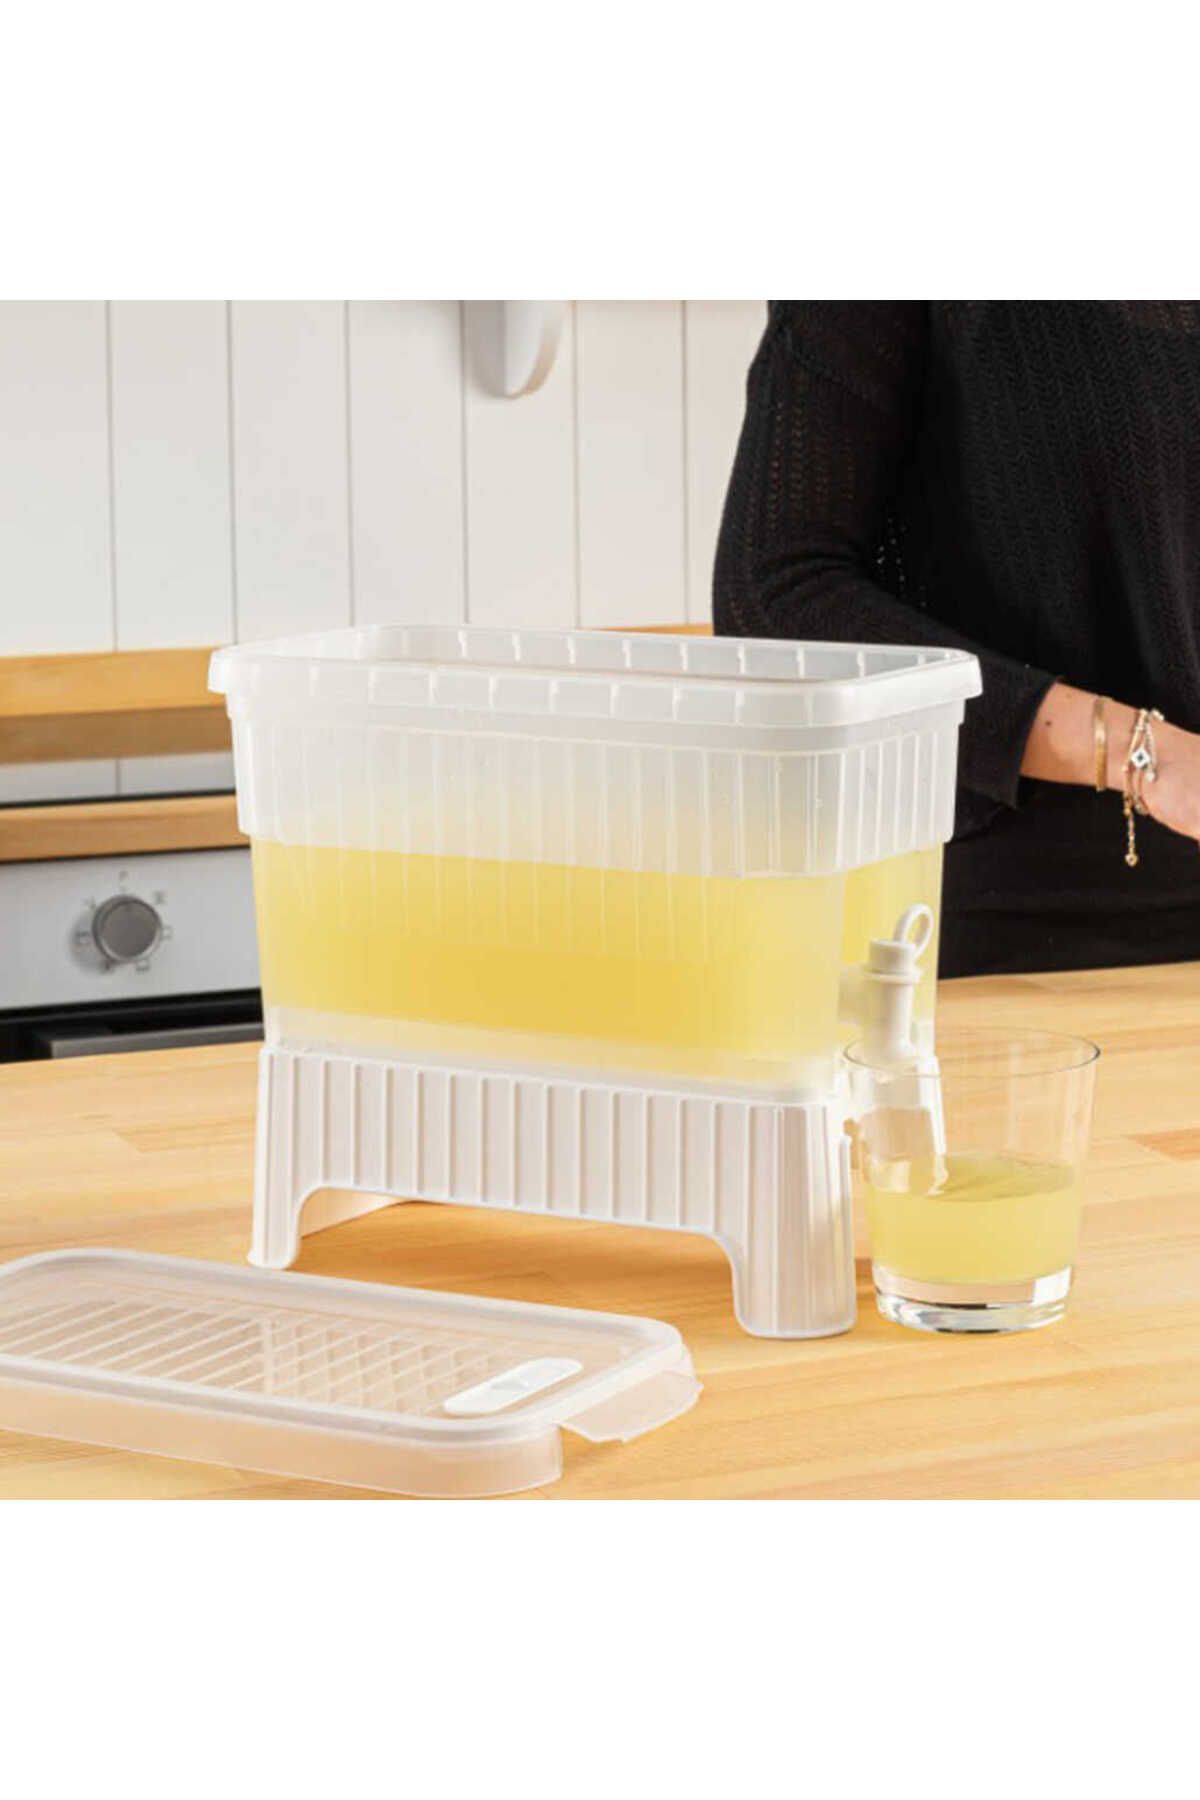 ATAMARKET Beyaz Buzdolabı İçi Musluklu Ayaklı Su -Limonata - İçecek Sebili Piknik Bidonu 4 LT